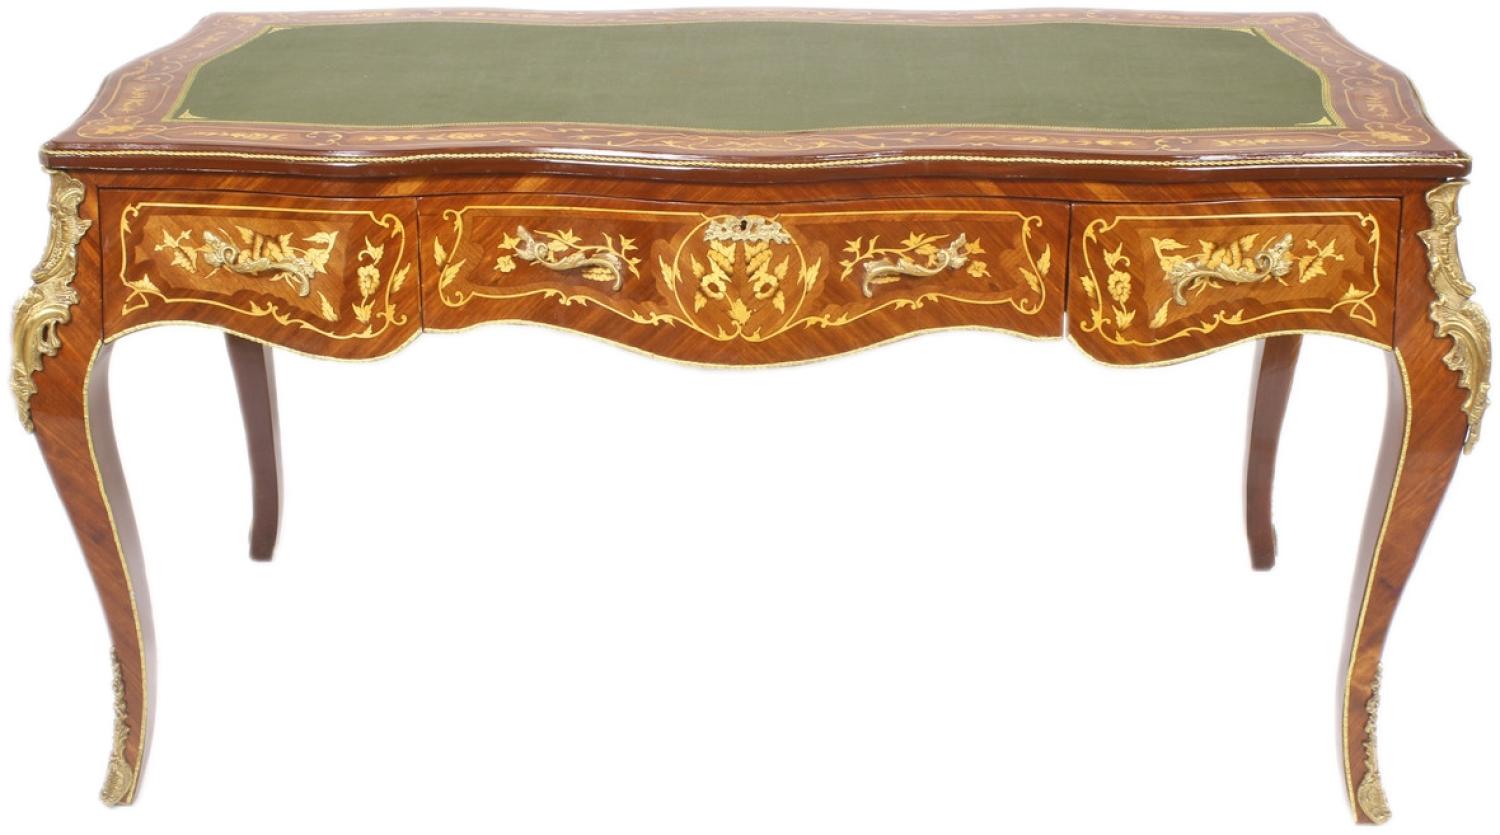 Casa Padrino Luxus Barock Schreibtisch Mahagoni Intarsien / Gold 155 cm - Antik Stil Sekretär Luxus Möbel Bild 1